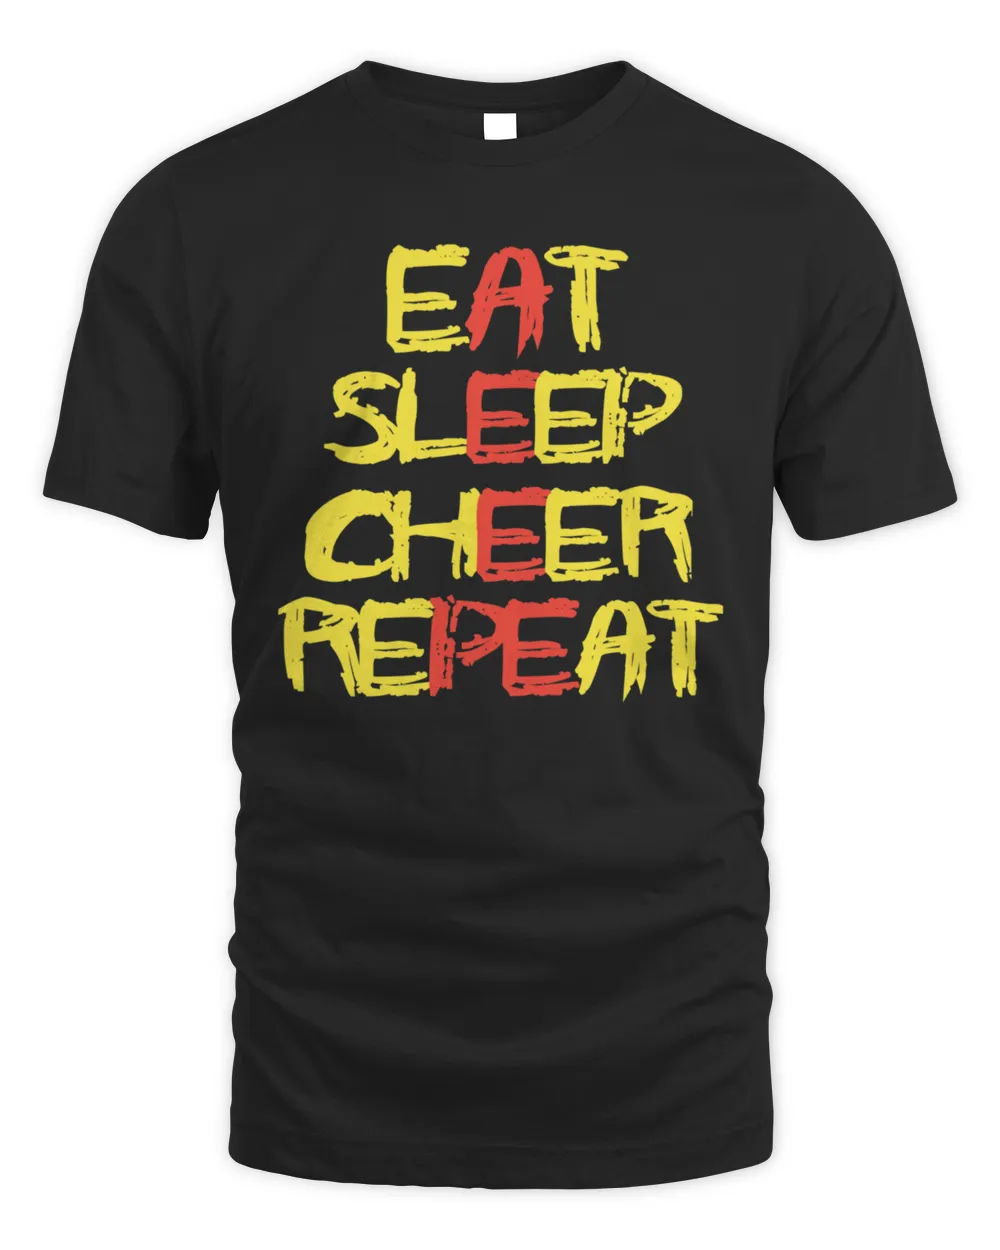 Eat sleep cheer repeat 684 Shirt